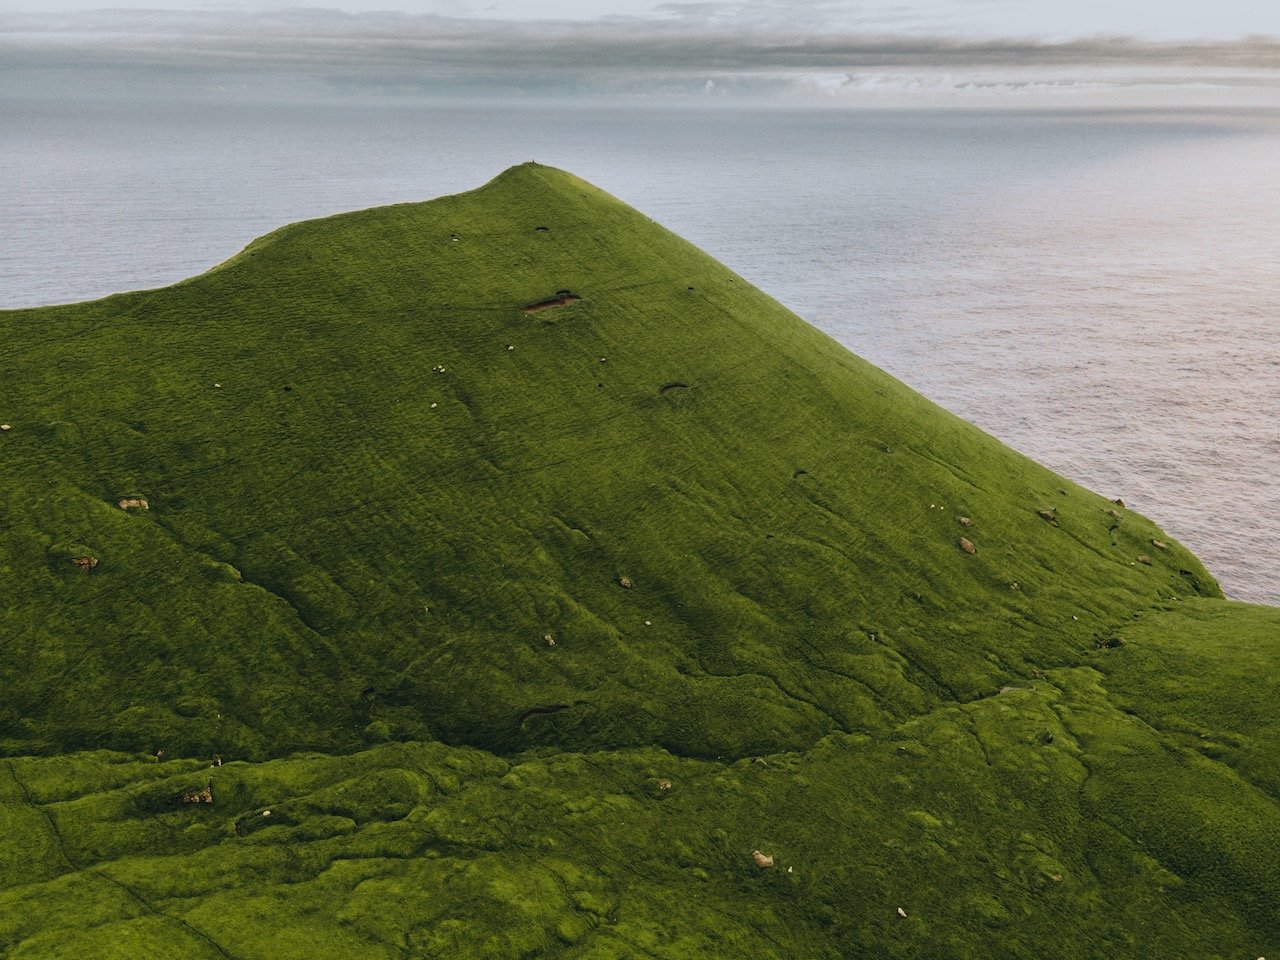   Trollanes, Kalsoy, Faroe Islands (ISO 400, 4.5 mm,  f /2.8, 1/40 s)  